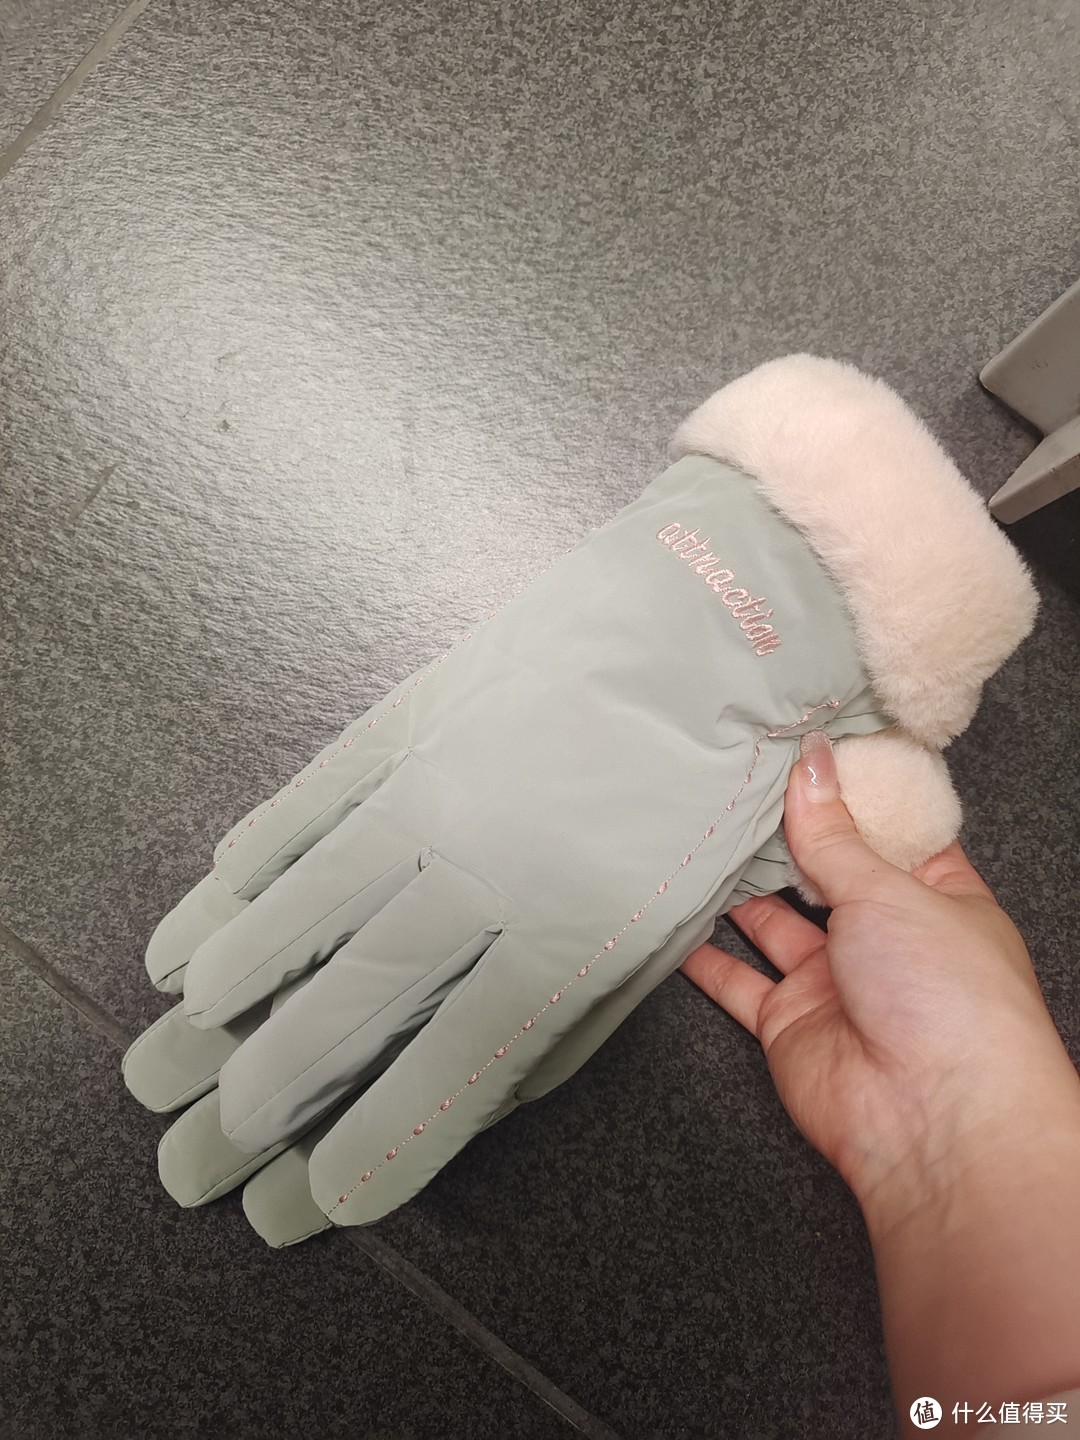 冬季滑雪必带的漂亮豆绿色加厚手套